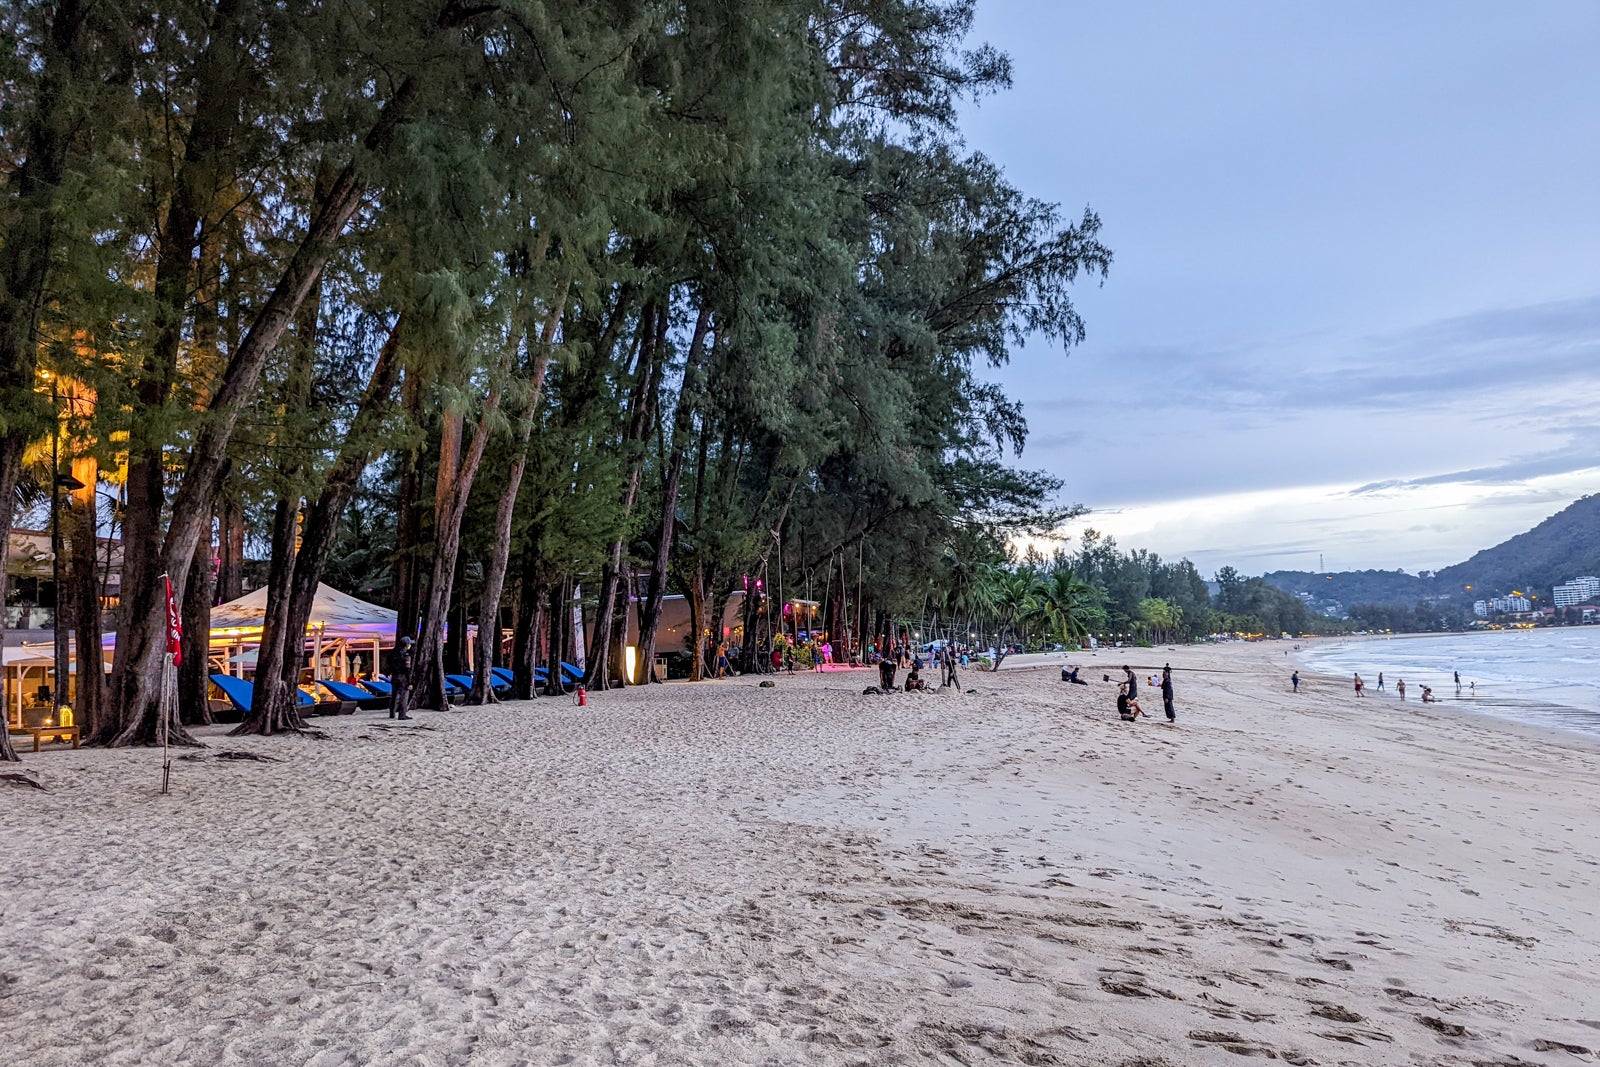 InterContinental Phuket Resort beach